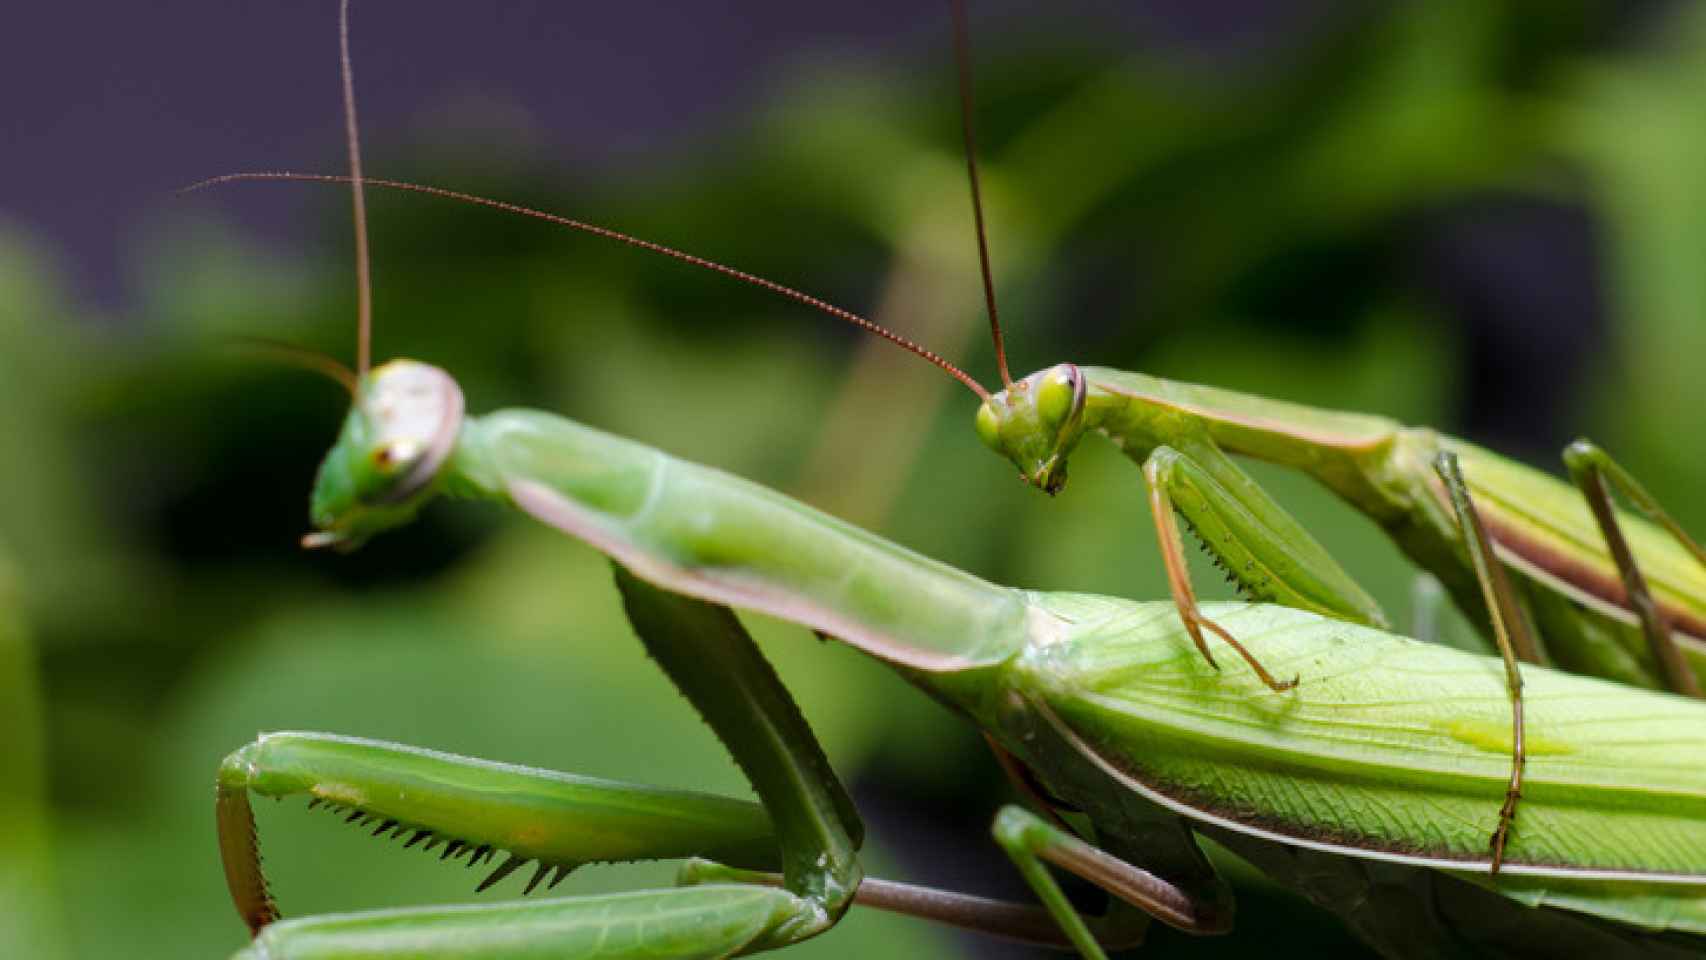 Al observar el apareamiento de las mantis, pueden diferenciarse en que el macho es más pequeño que la hembra y tiene alas pardo-grisáceas desarrolladas.